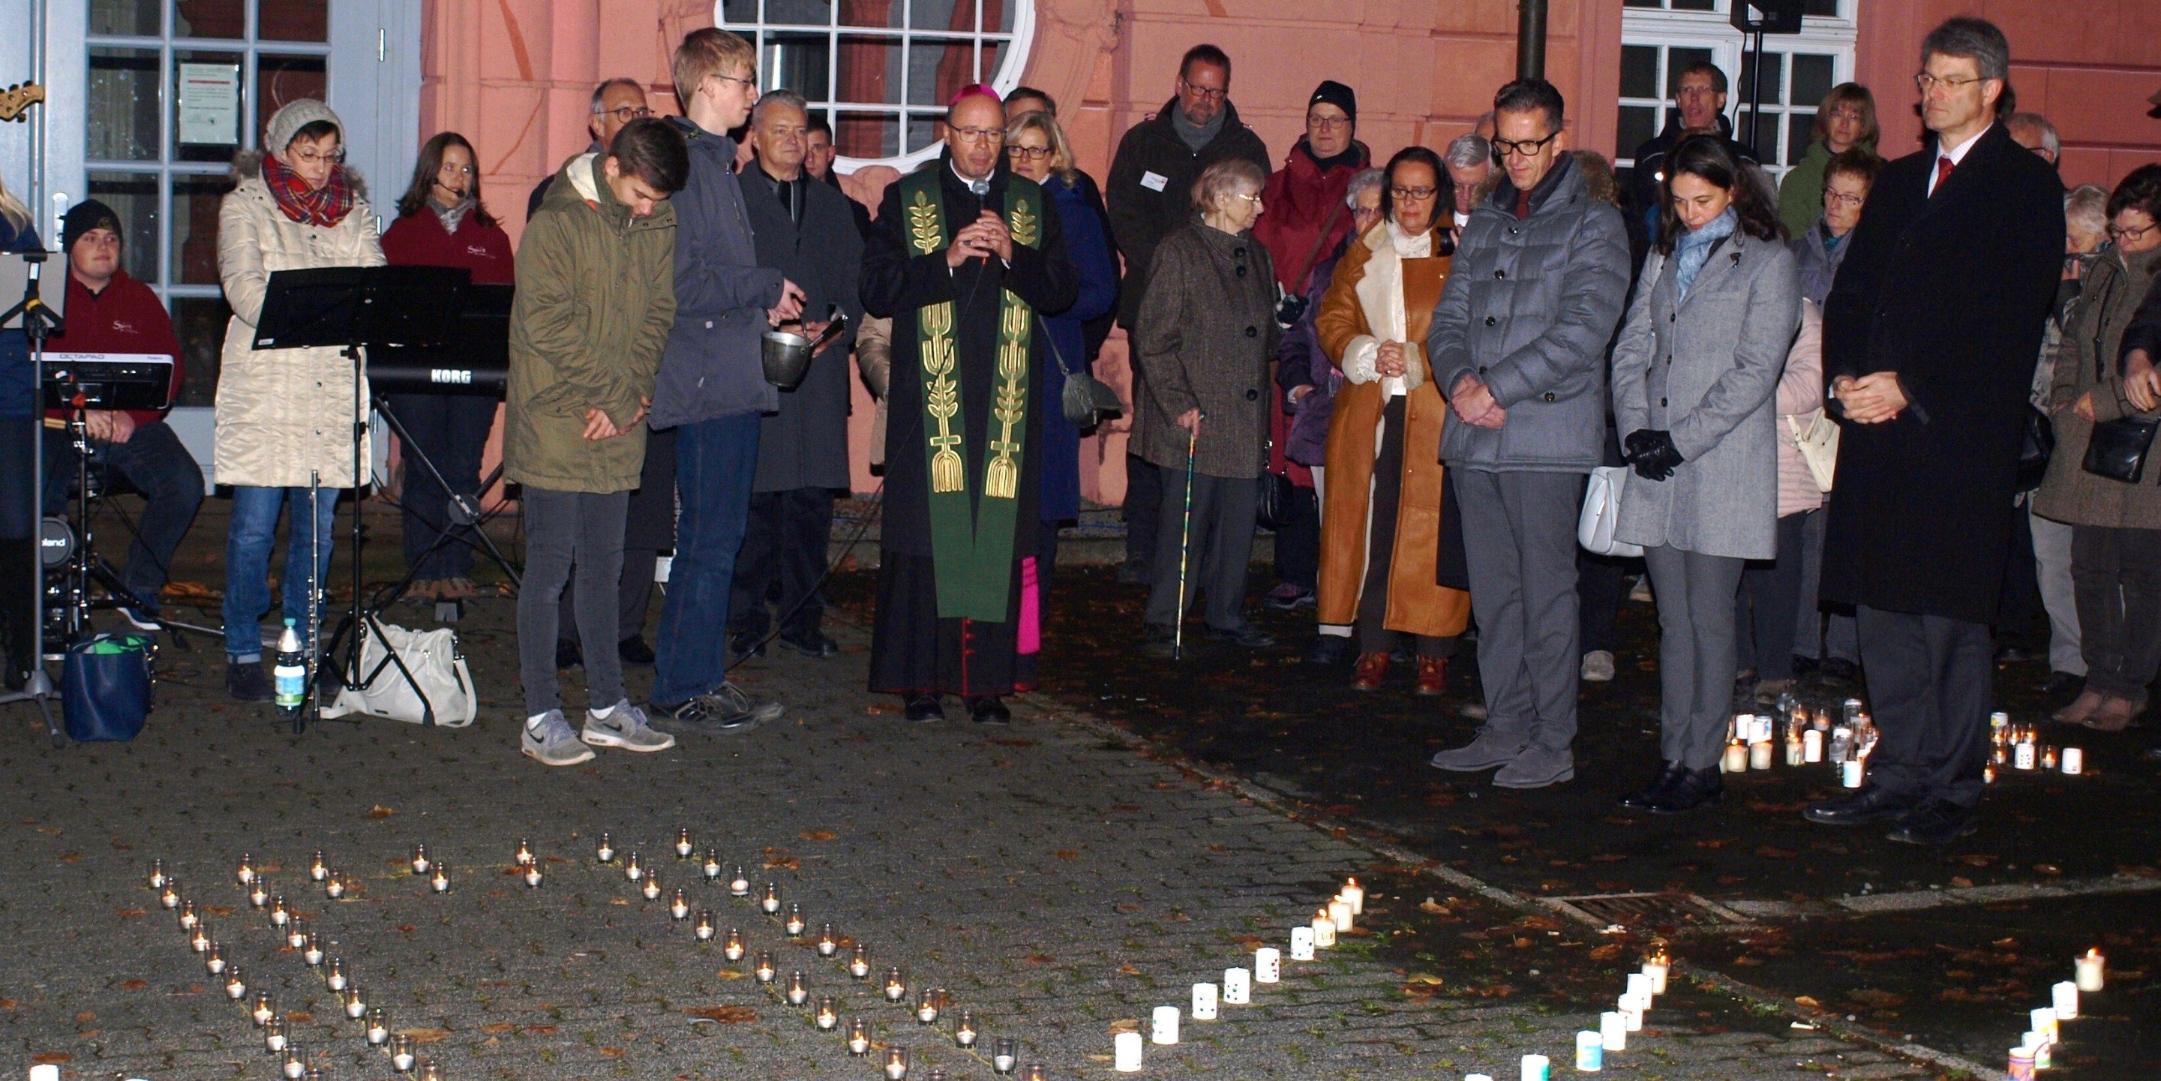 Bischof Dr. Stephan Ackermann segnet die Kerzen der Aktion „Eine Million Sterne“ auf dem Schulhof des Regino-Gymnasiums neben der Basilika in Prüm.